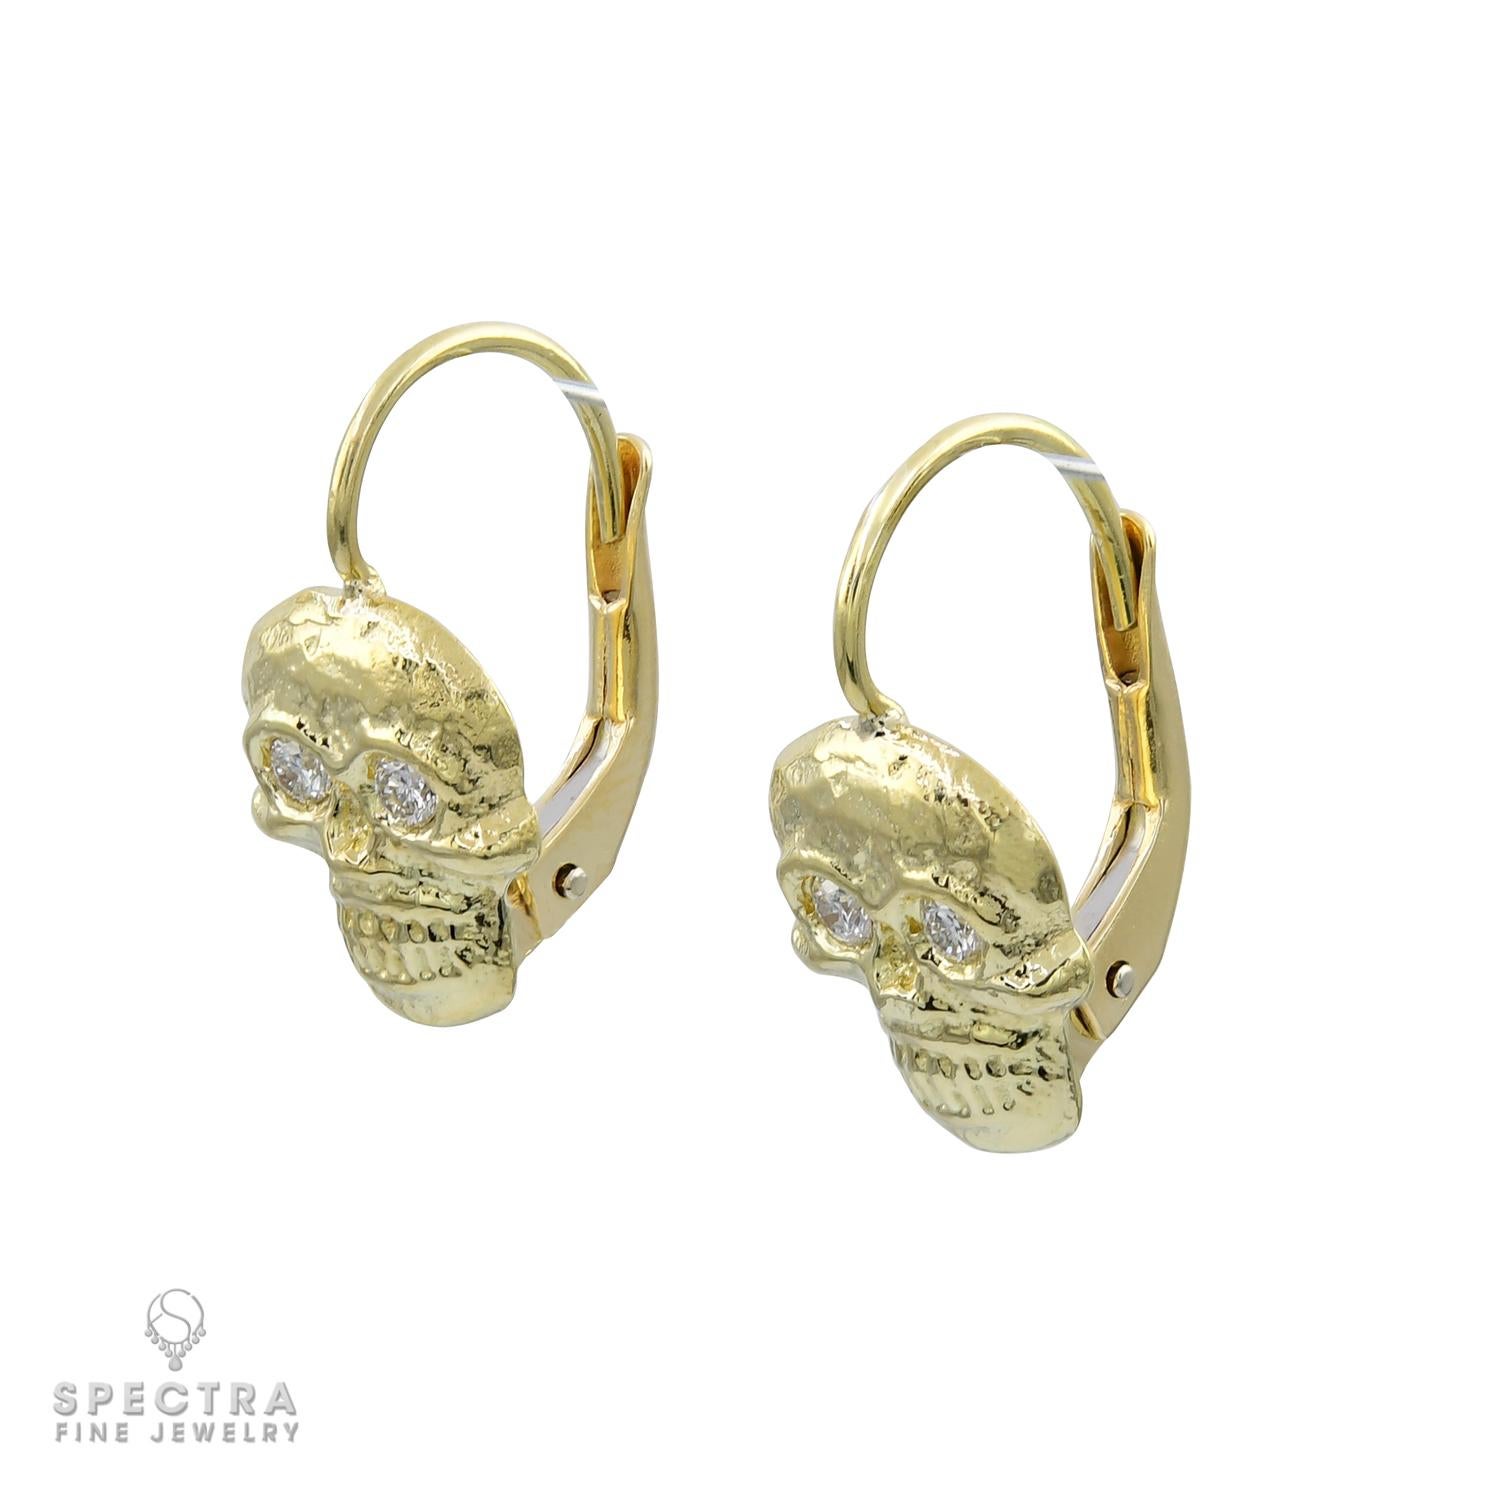 Diese hübschen Ohrringe mit einzigartigen Totenkopfmotiven sind aus glänzendem 18-karätigem Gelbgold gefertigt, wiegen insgesamt 4,80 Gramm und sind ca. 0,5 Zoll lang. Die detaillierten Totenköpfe sind so gestaltet, dass sie elegant von den